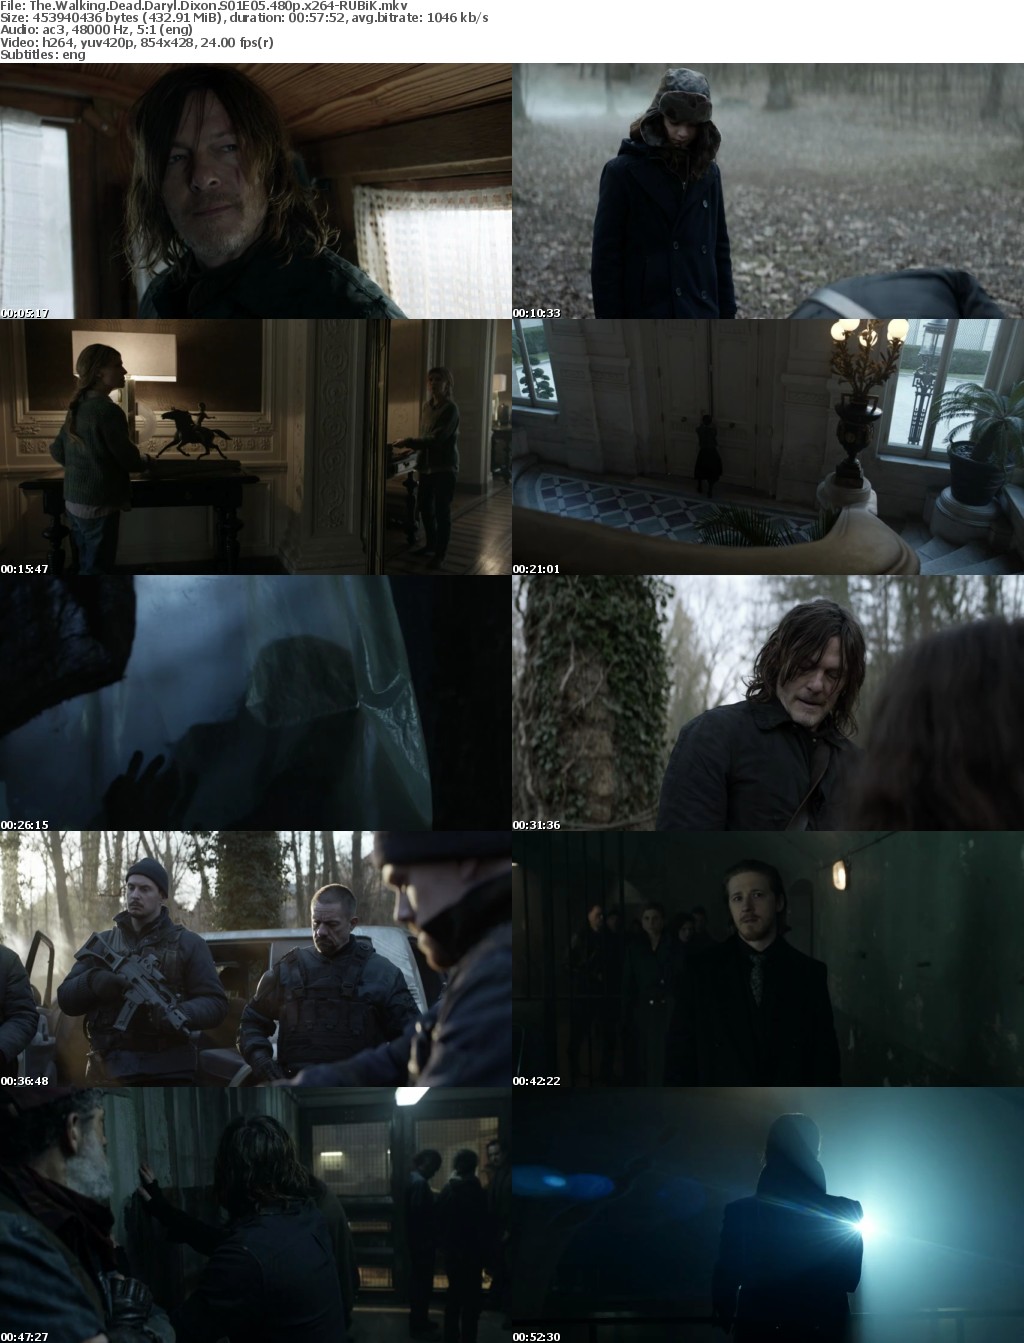 The Walking Dead Daryl Dixon S01 480p x264-RUBiK